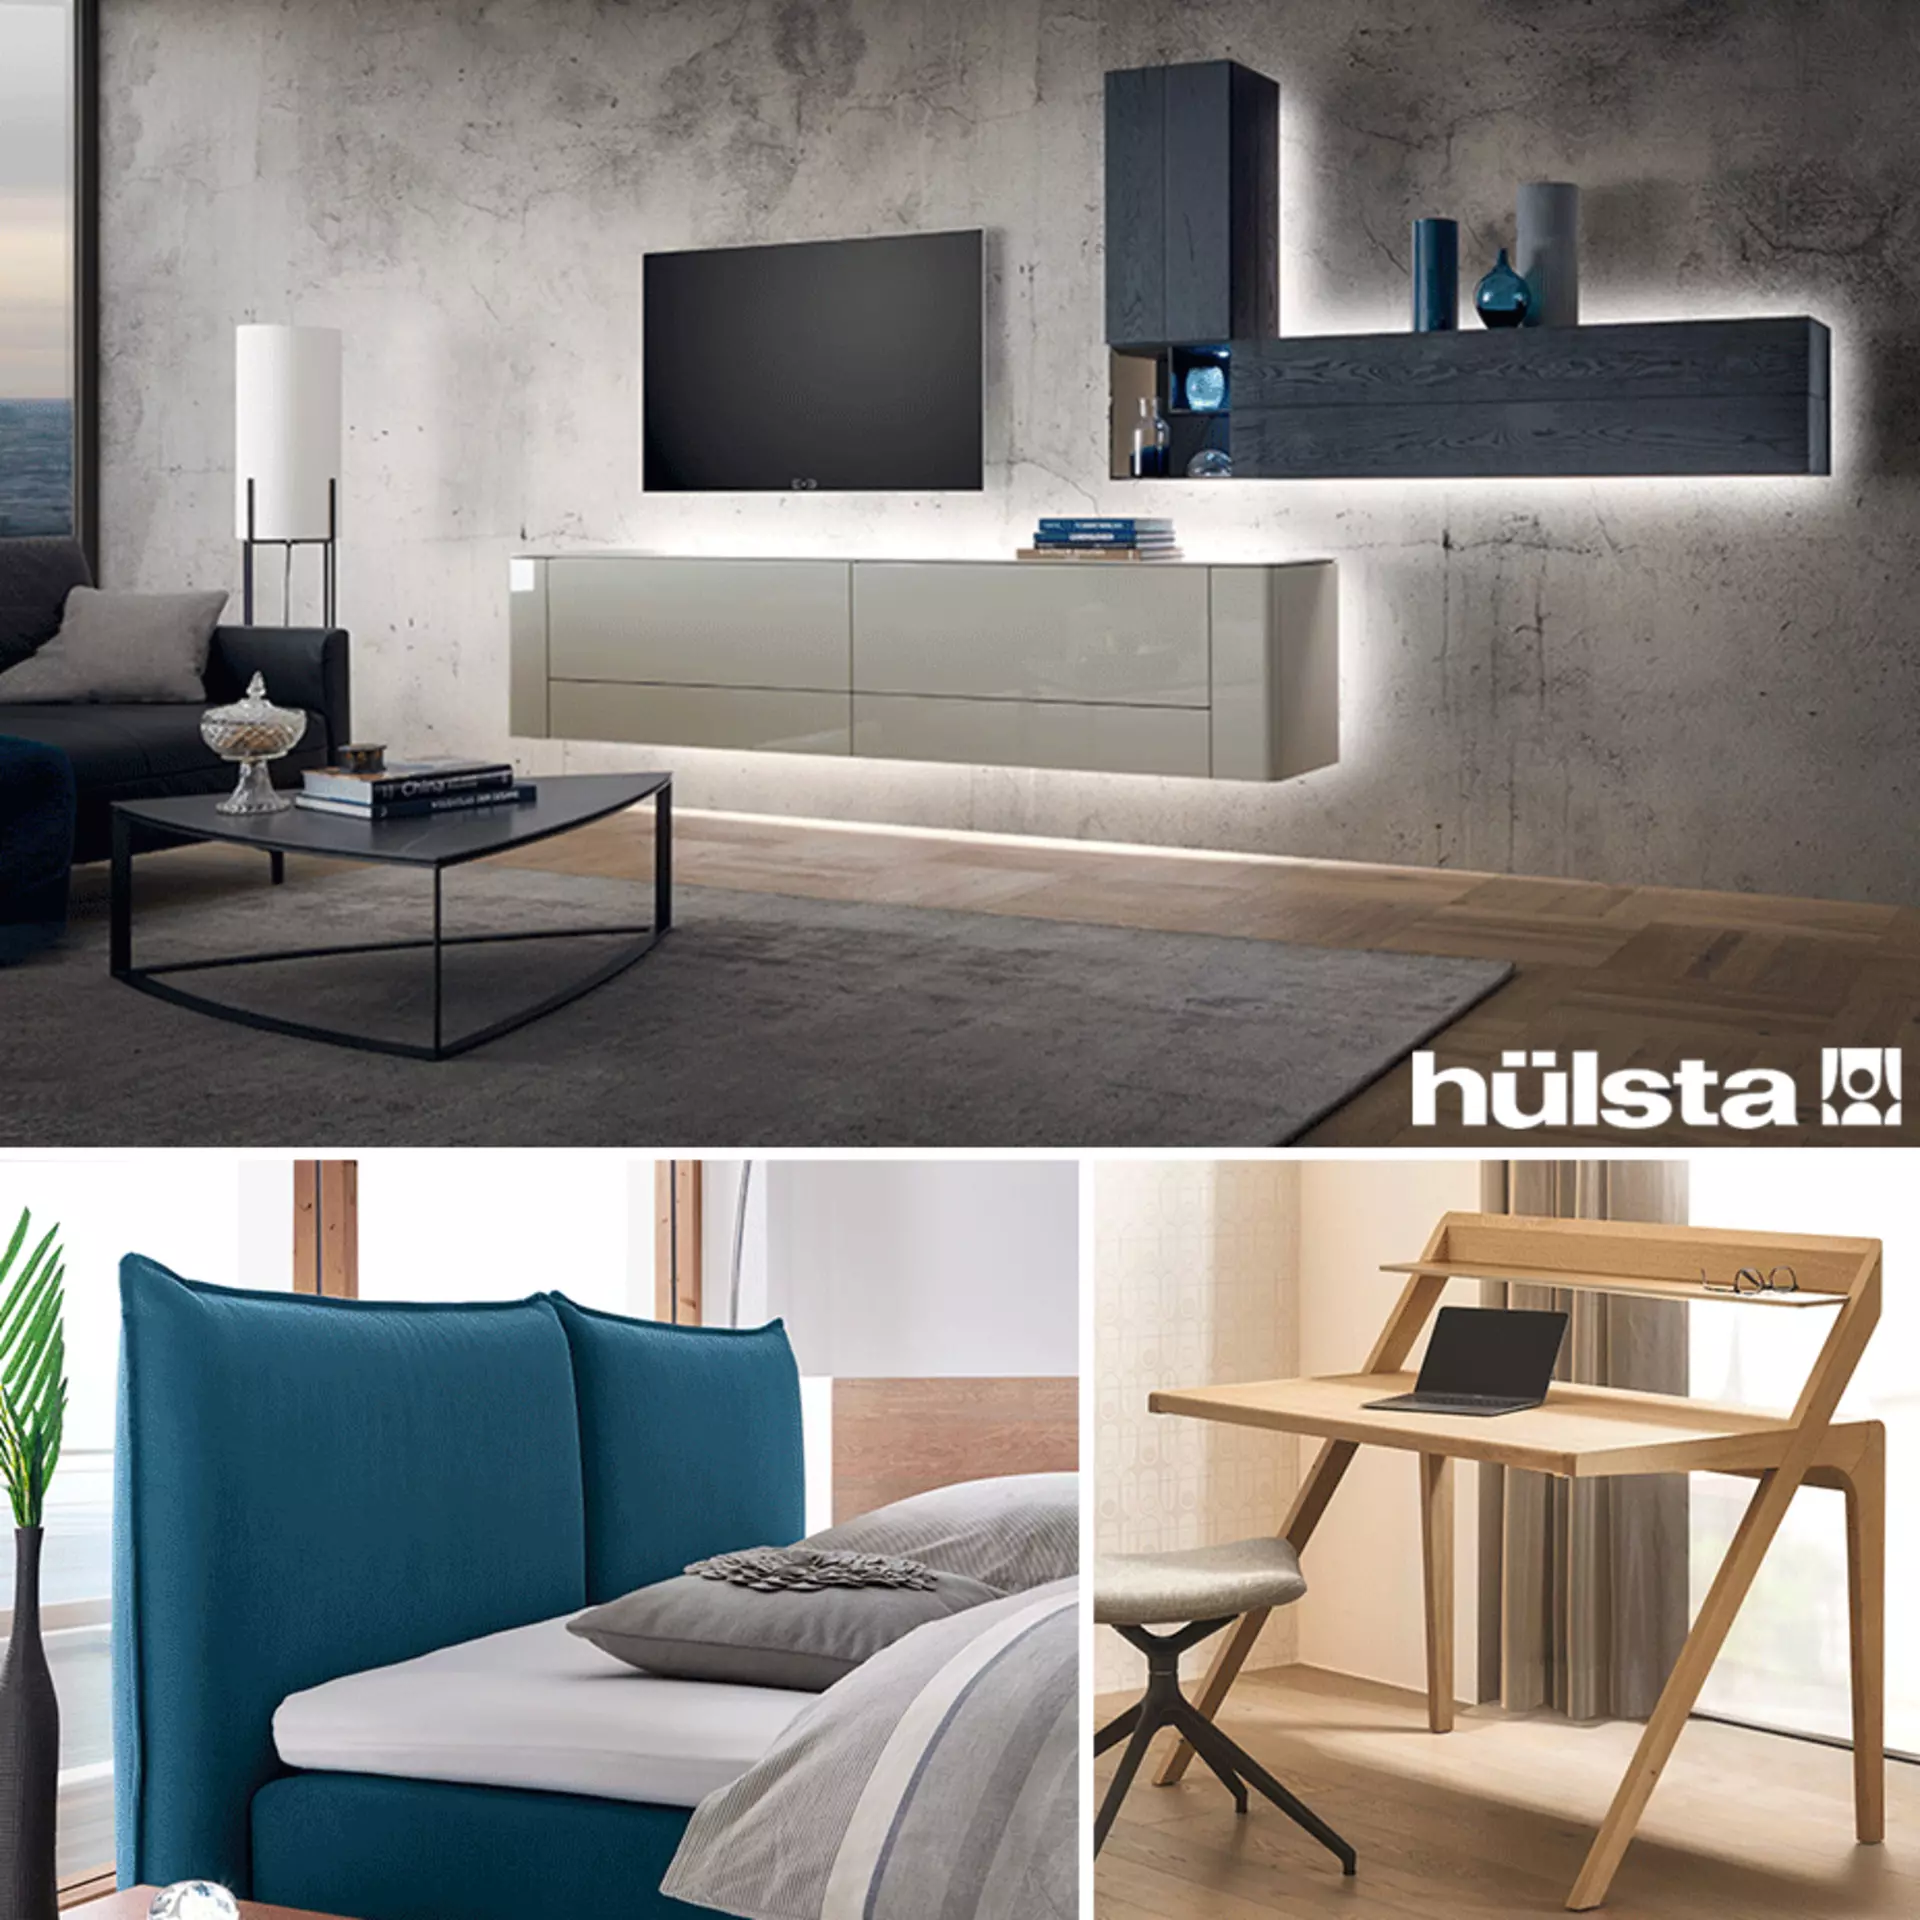 Hülsta - die Premium-Marke für exklusive Möbel mit Stil bei Möbel Inhofer